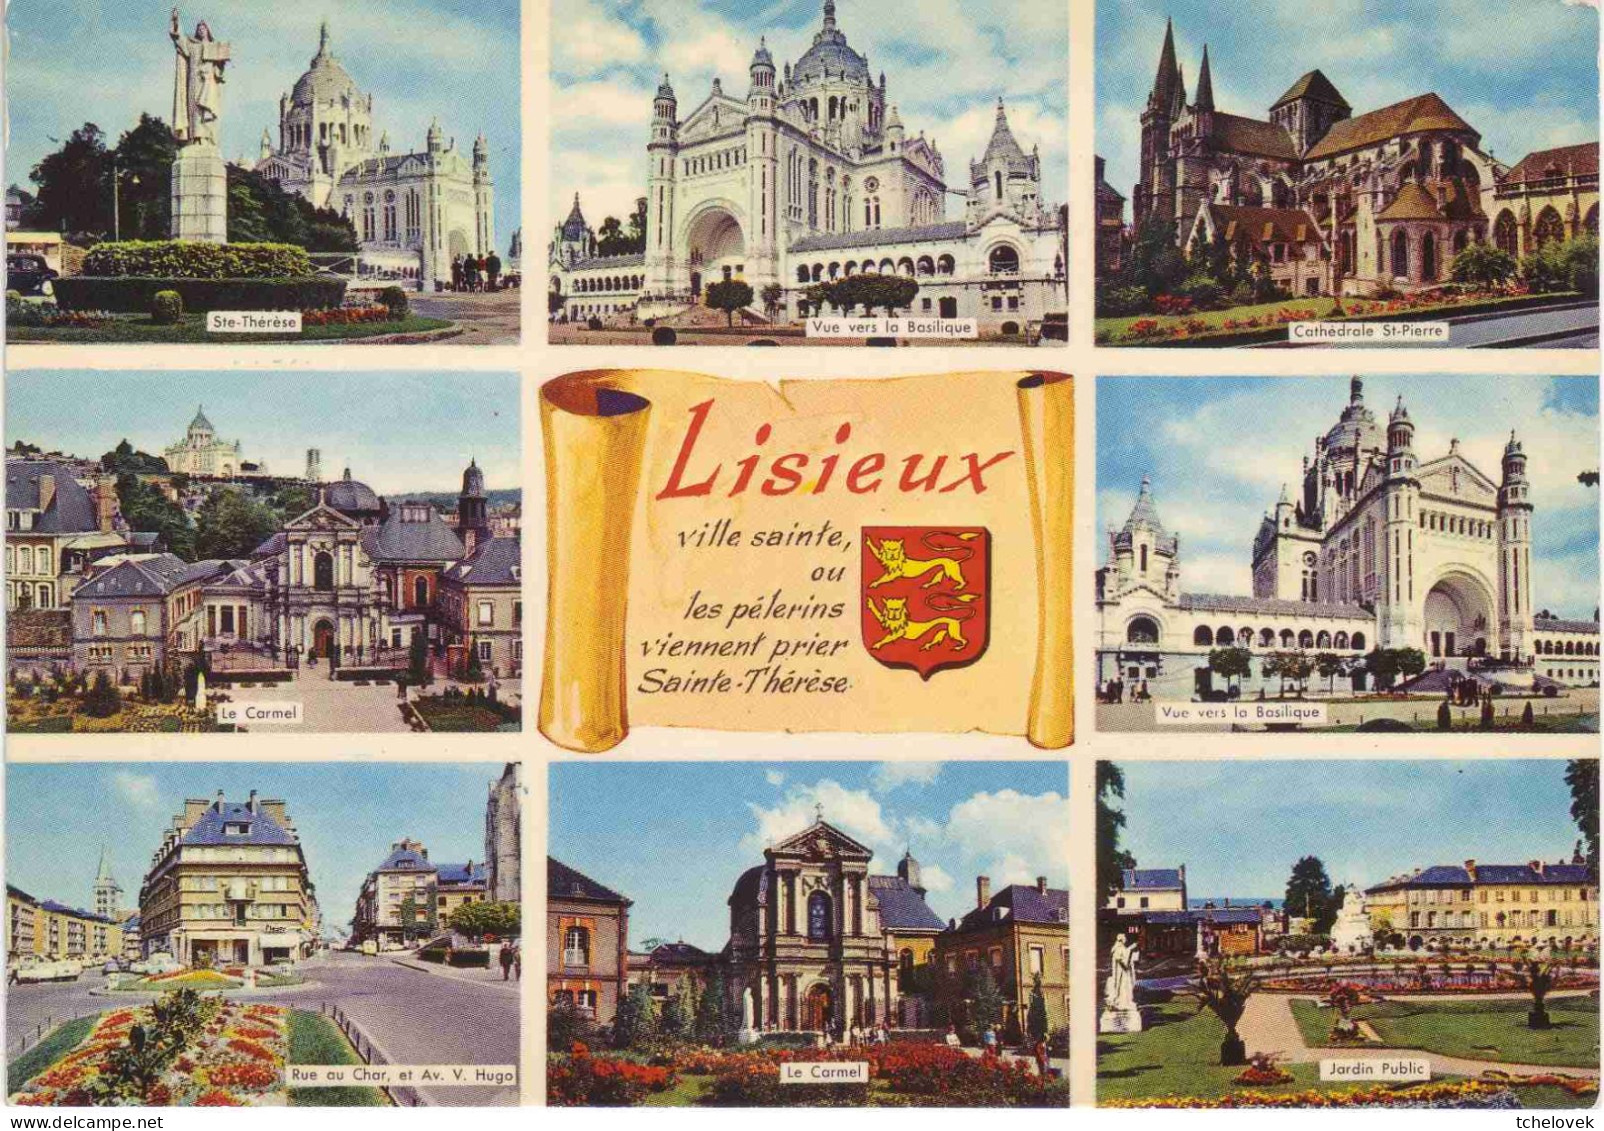 (14). Lisieux. 4 cp. 8 Chapelle du Carmel & (2) & 4 vues 1962 & 144 jardin public